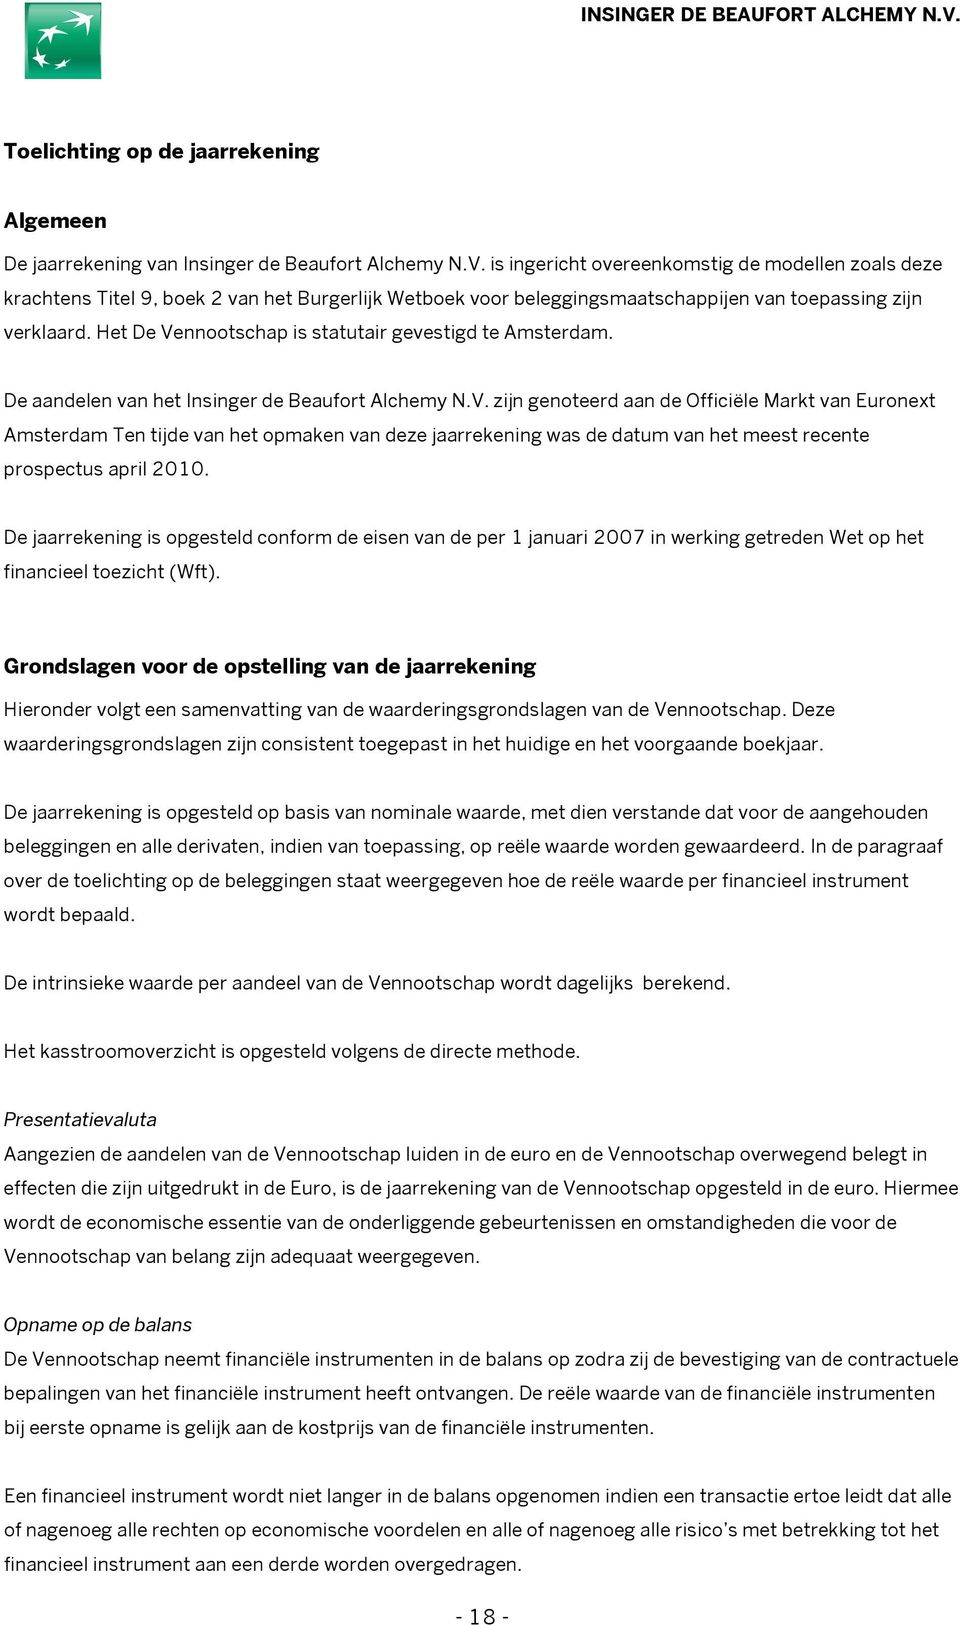 Het De Vennootschap is statutair gevestigd te Amsterdam. De aandelen van het Insinger de Beaufort Alchemy N.V. zijn genoteerd aan de Officiële Markt van Euronext Amsterdam Ten tijde van het opmaken van deze jaarrekening was de datum van het meest recente prospectus april 2010.